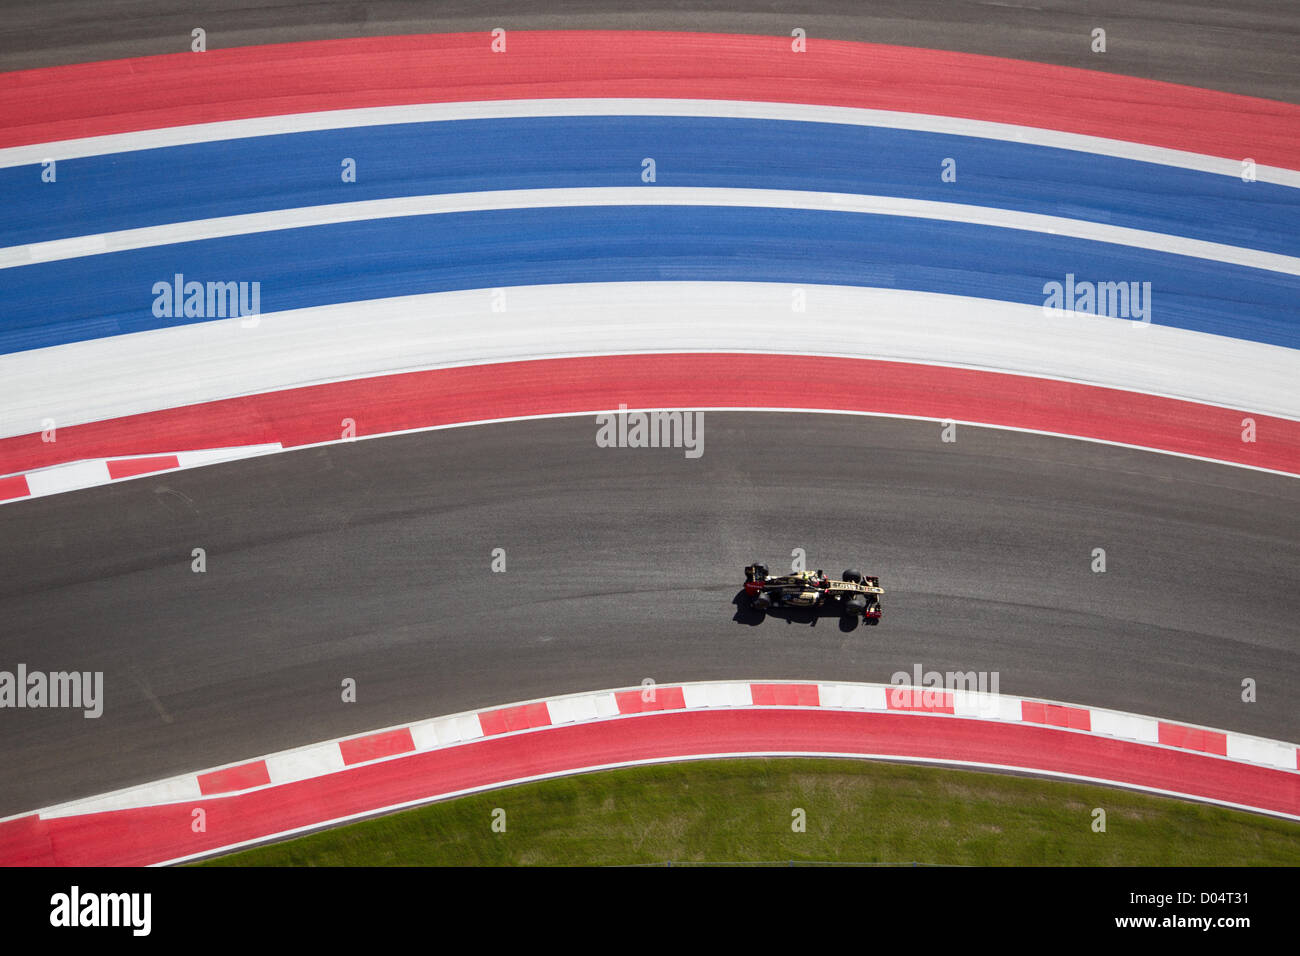 Kimi Raikkonen, de Lotus durante la práctica de la F1 Grand Prix de Estados Unidos en el circuito de las Américas cerca de Austin Foto de stock